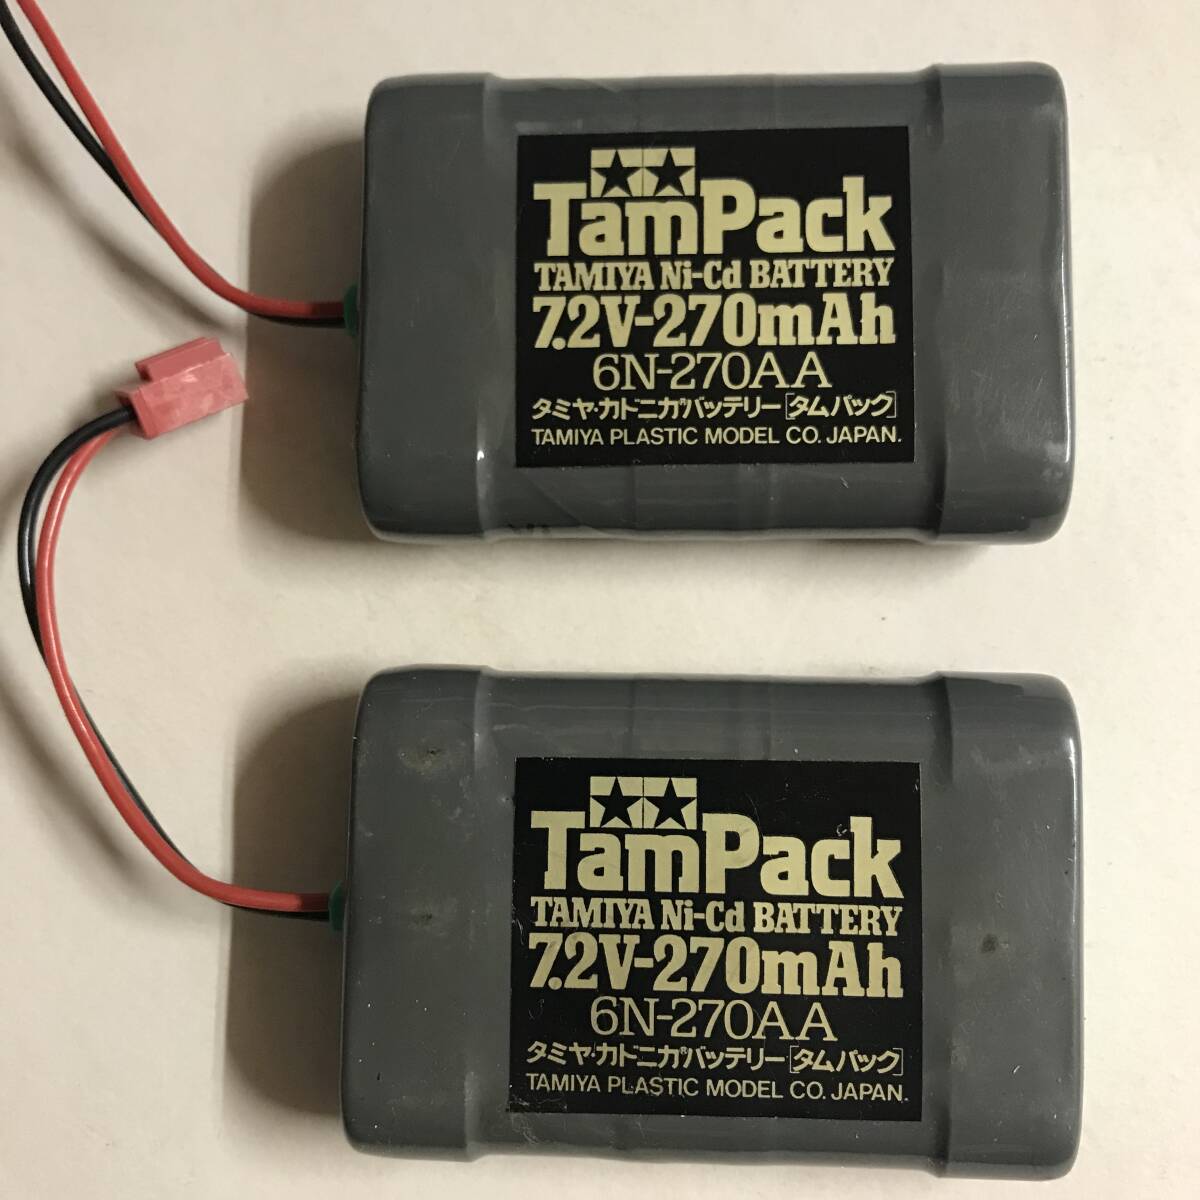 TamPacktam pack 7.2V 270mAh Tamiya kadonika battery 6N-270AA 2 piece 